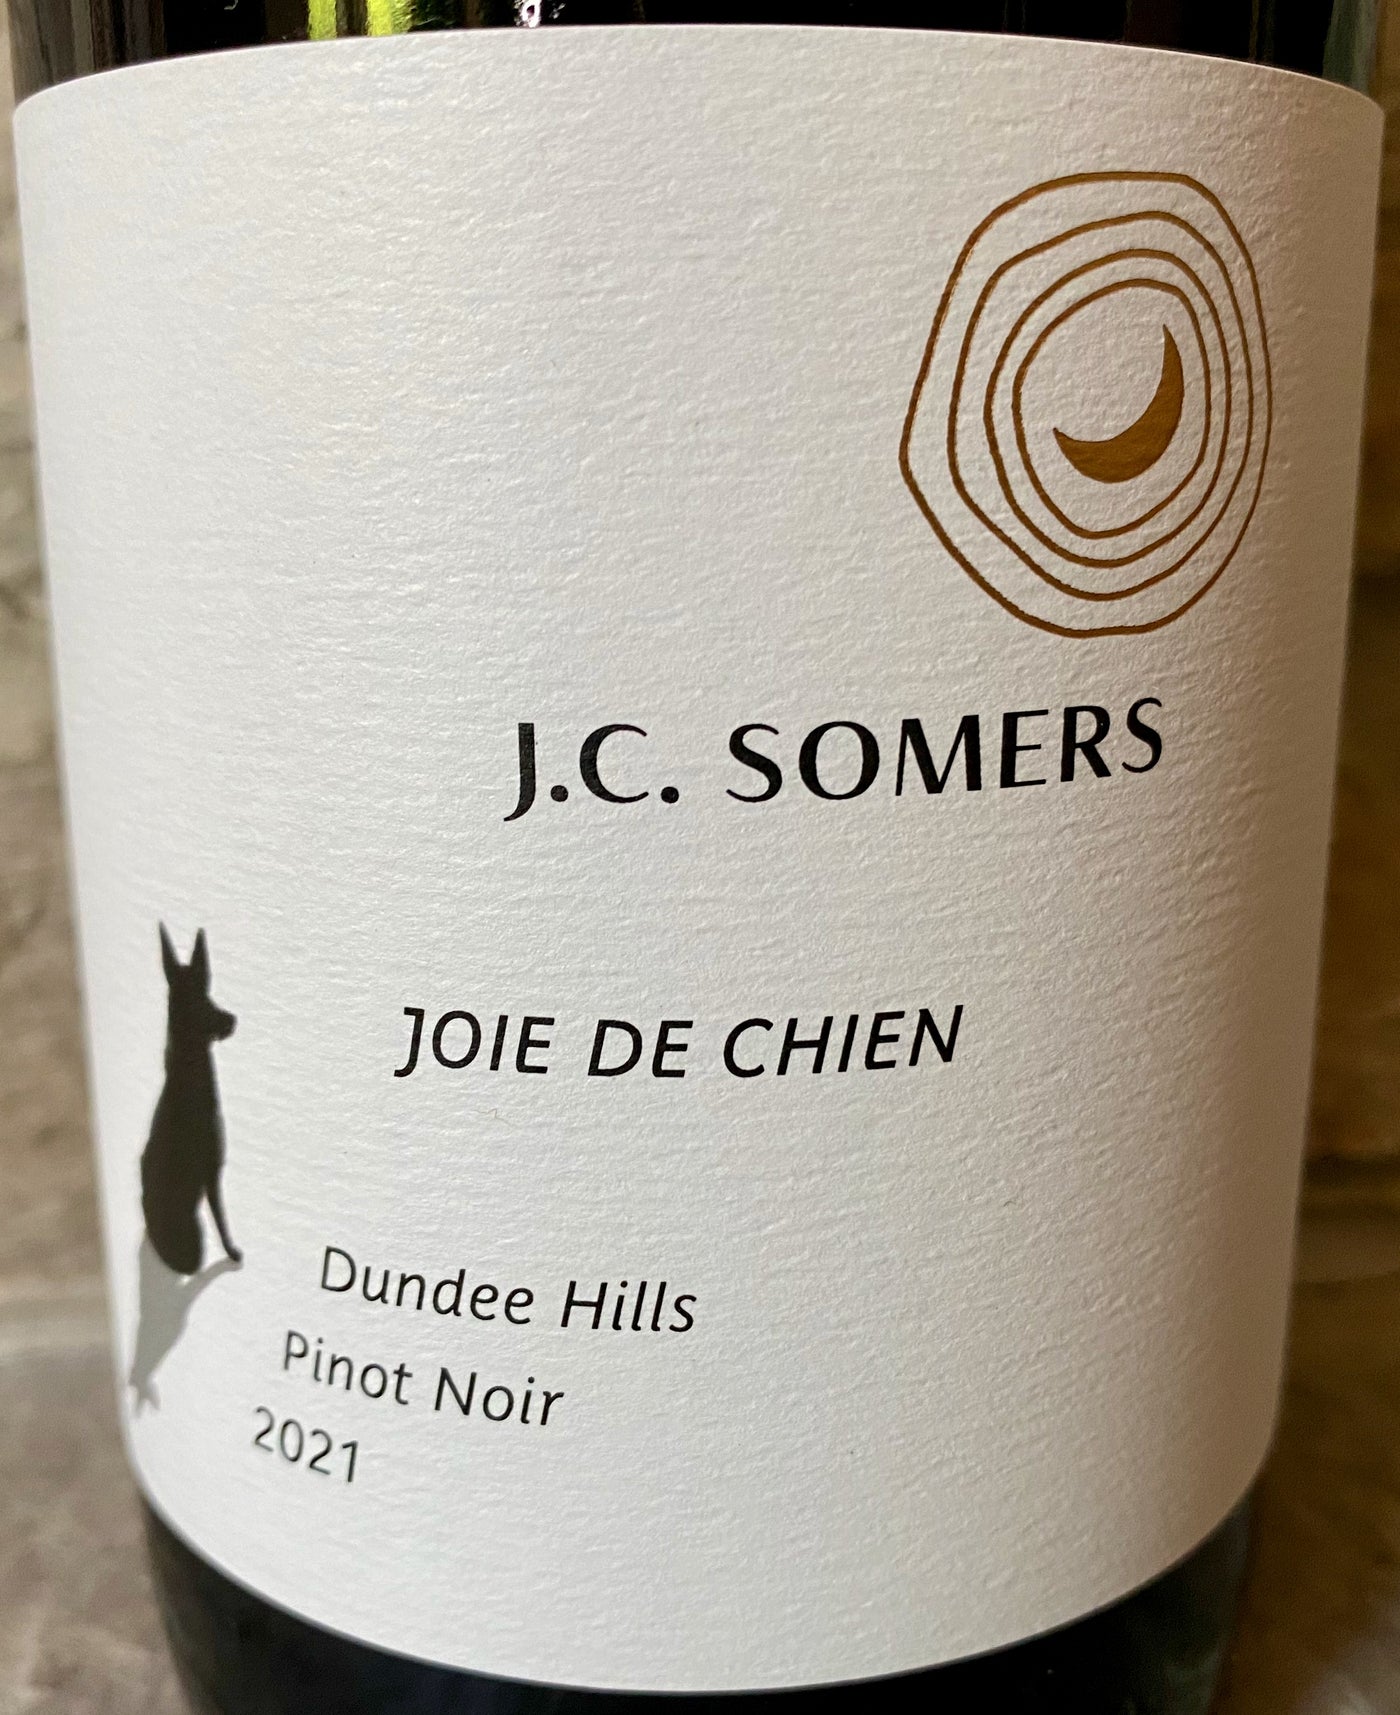 J.C. Somers Joie de Chien Dundee Hills Pinot Noir 2021